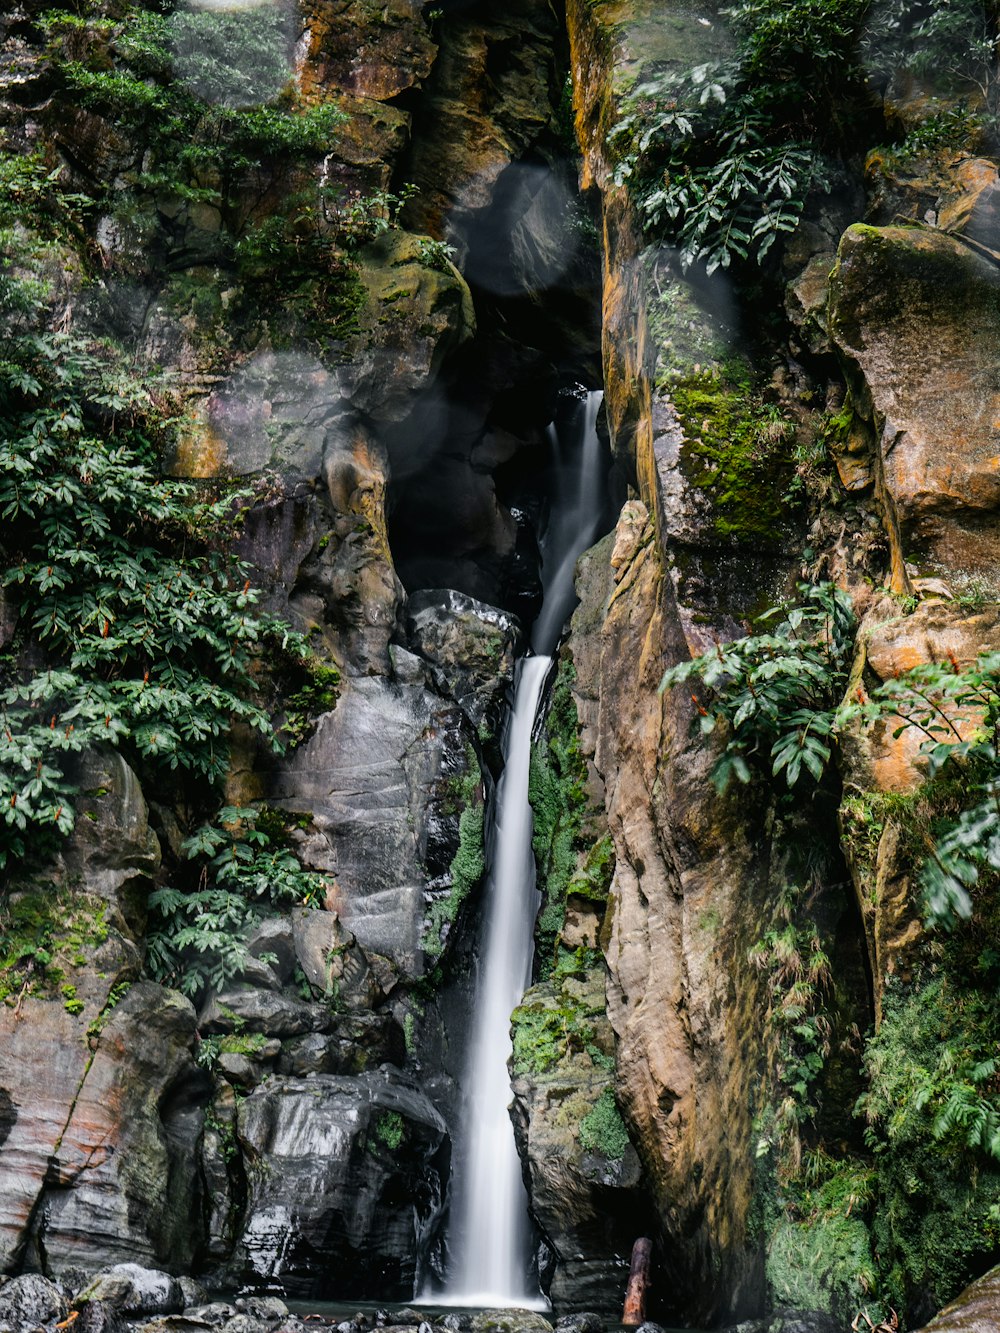 chutes d’eau entre les formations rocheuses brunes et vertes pendant la journée